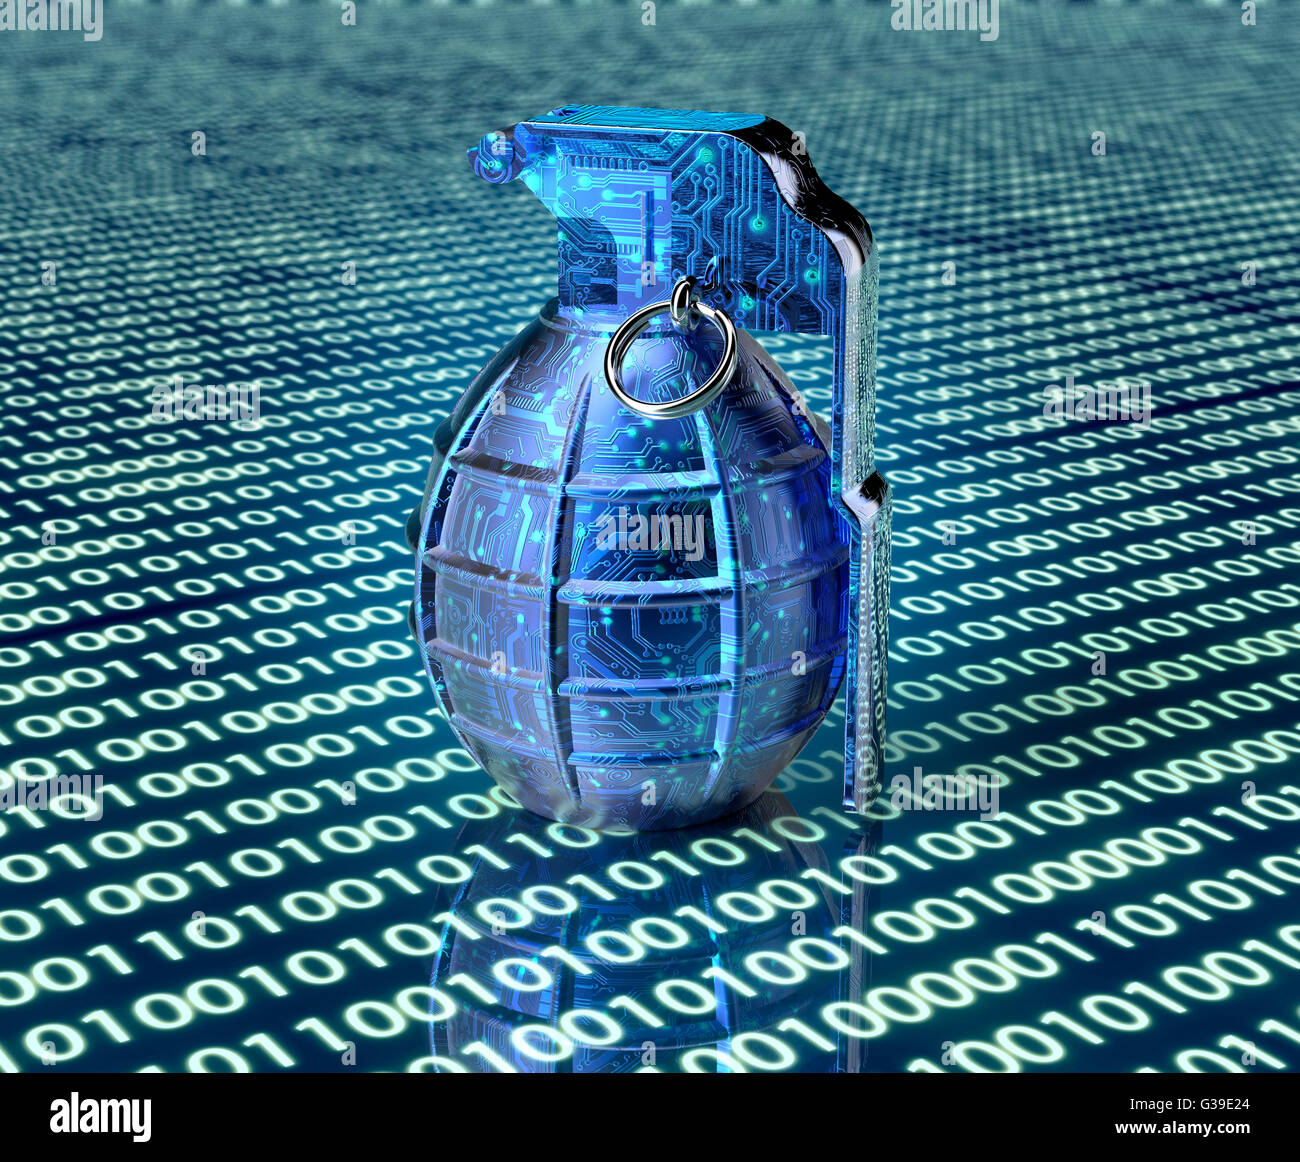 Cyber terrorisme concept ordinateur bombe dans un environnement électronique, 3d illustration Banque D'Images